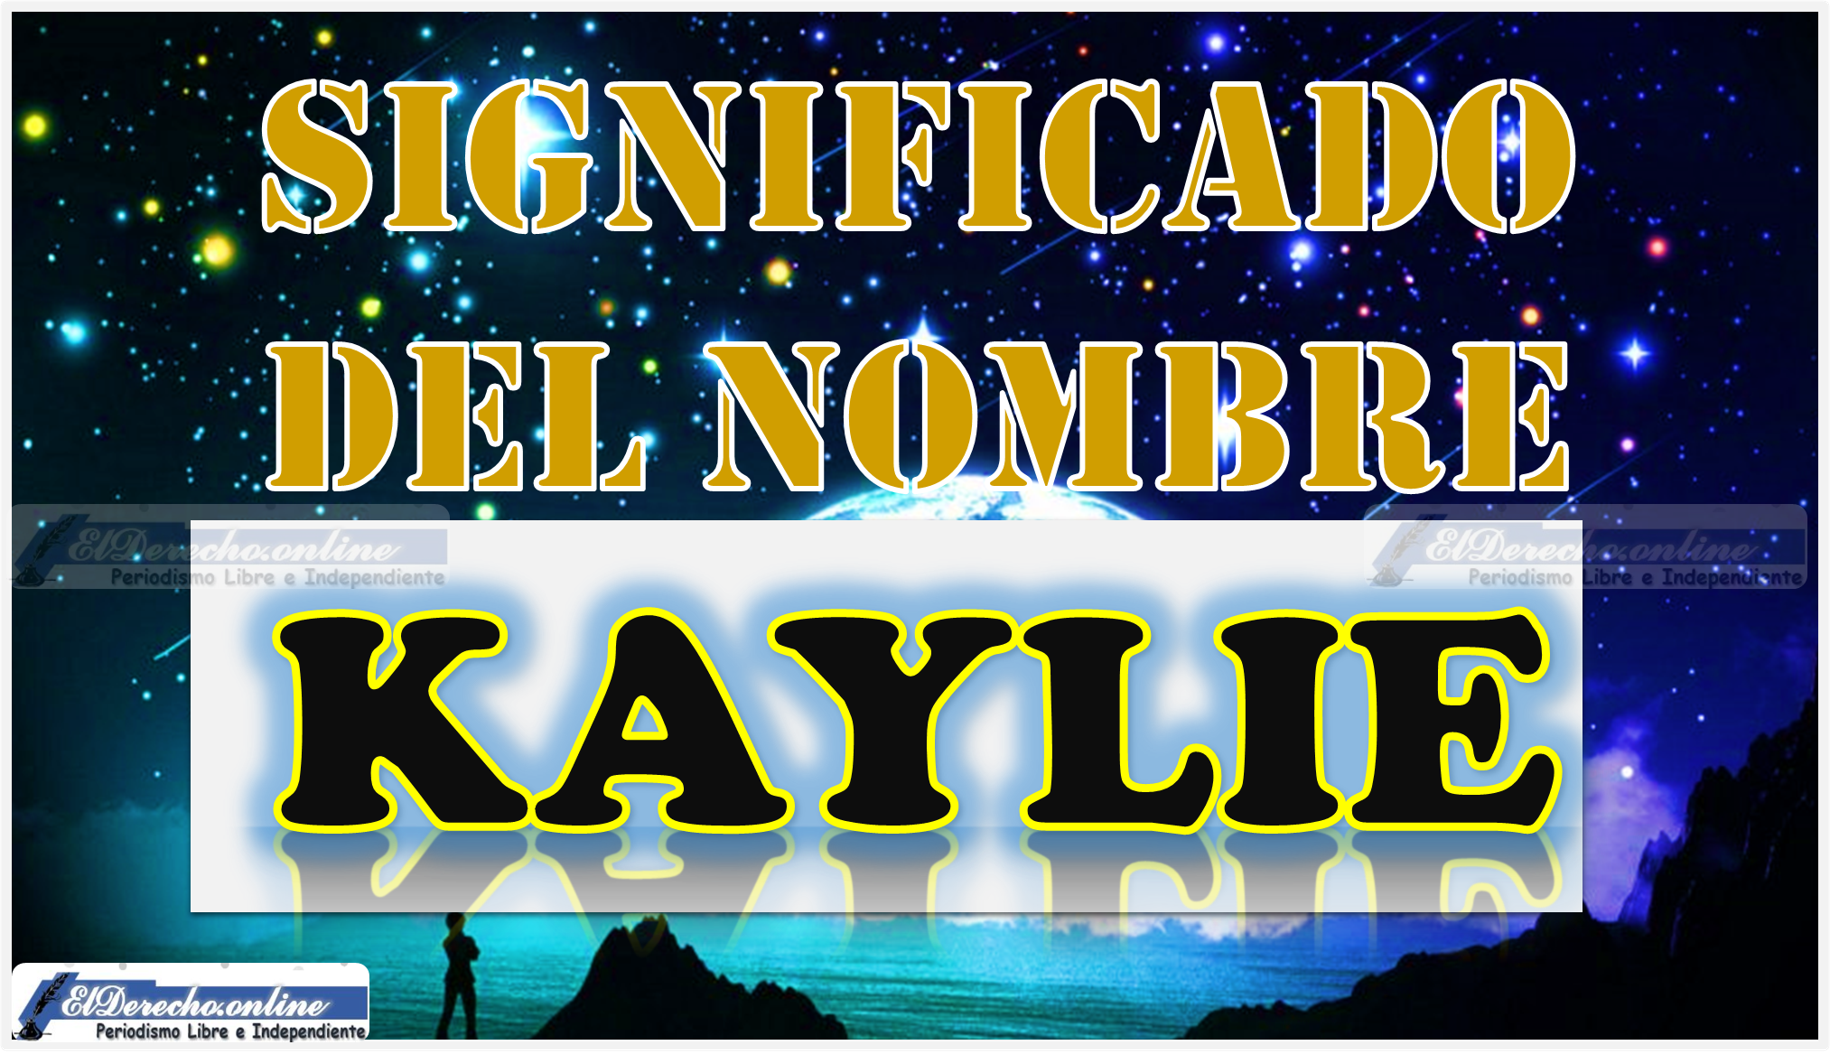 Significado del nombre Kaylie, su origen y más